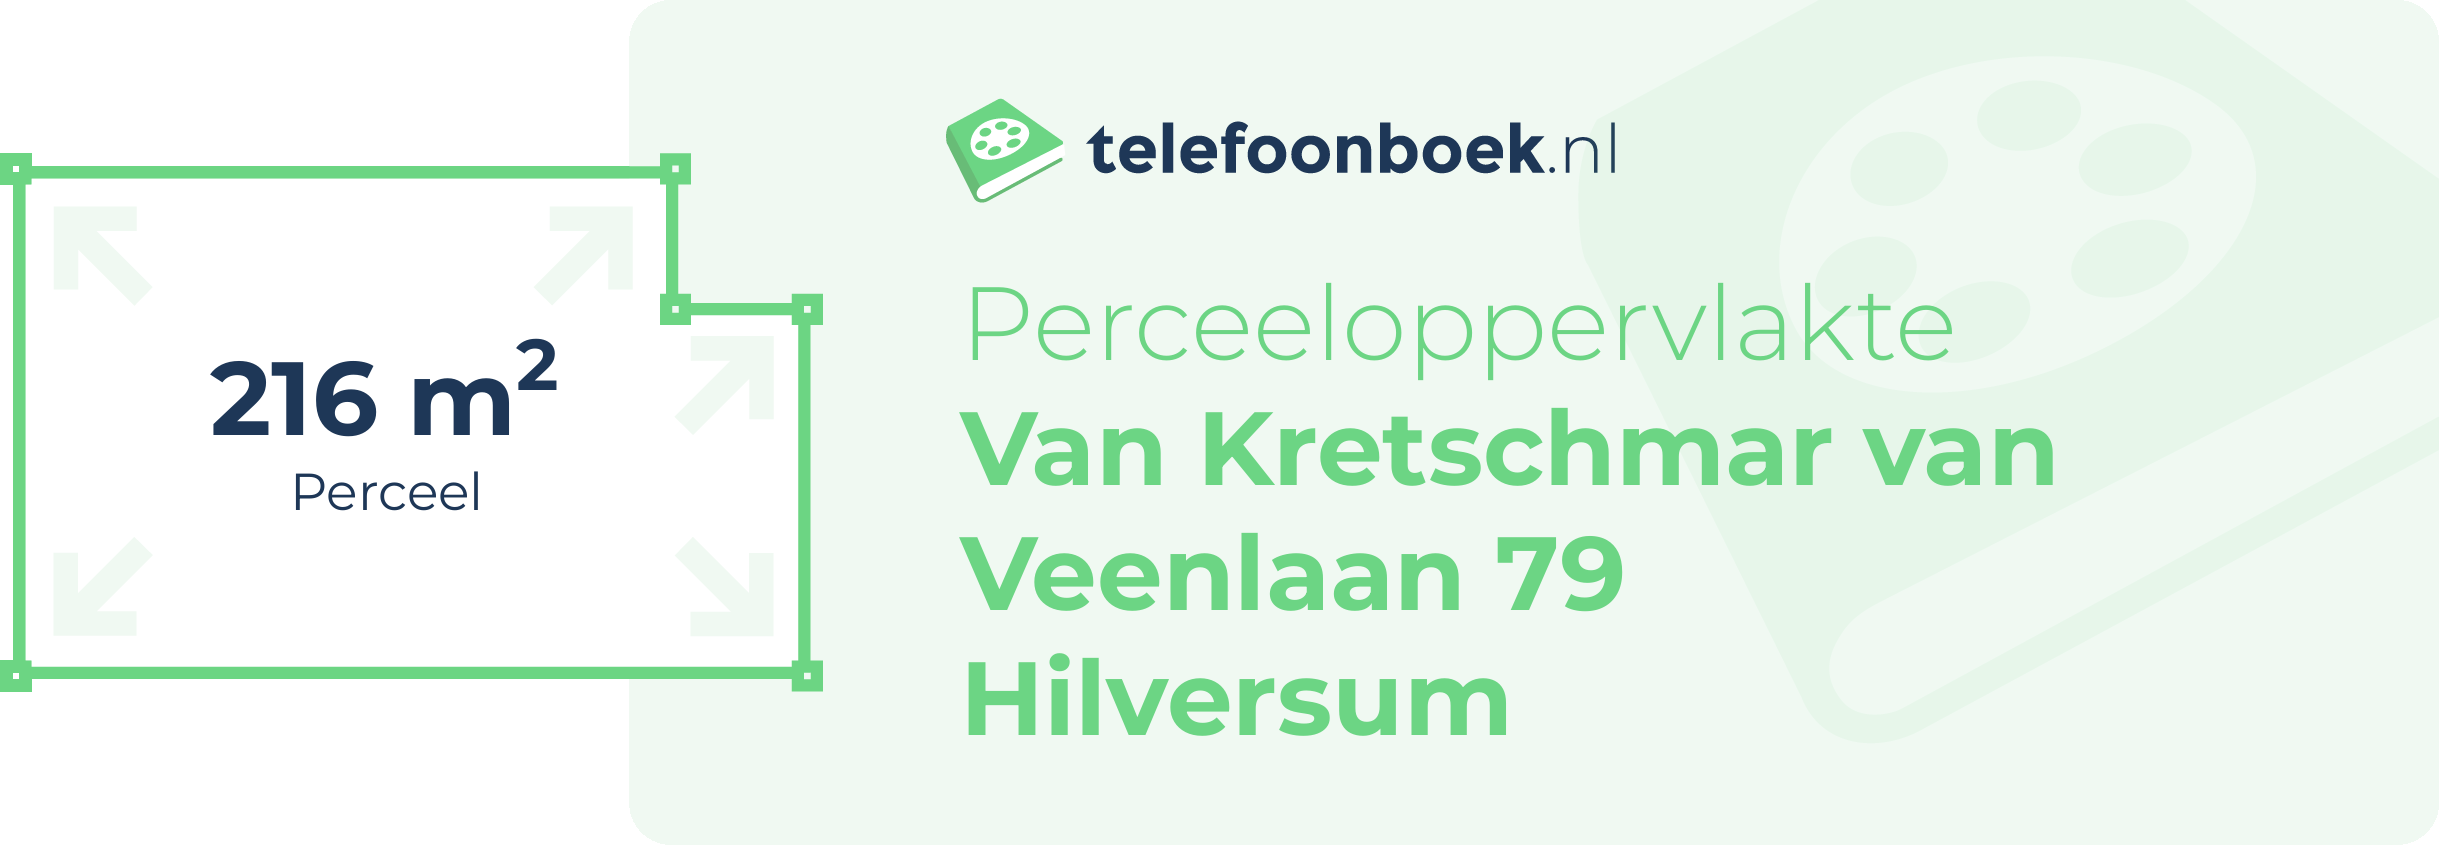 Perceeloppervlakte Van Kretschmar Van Veenlaan 79 Hilversum